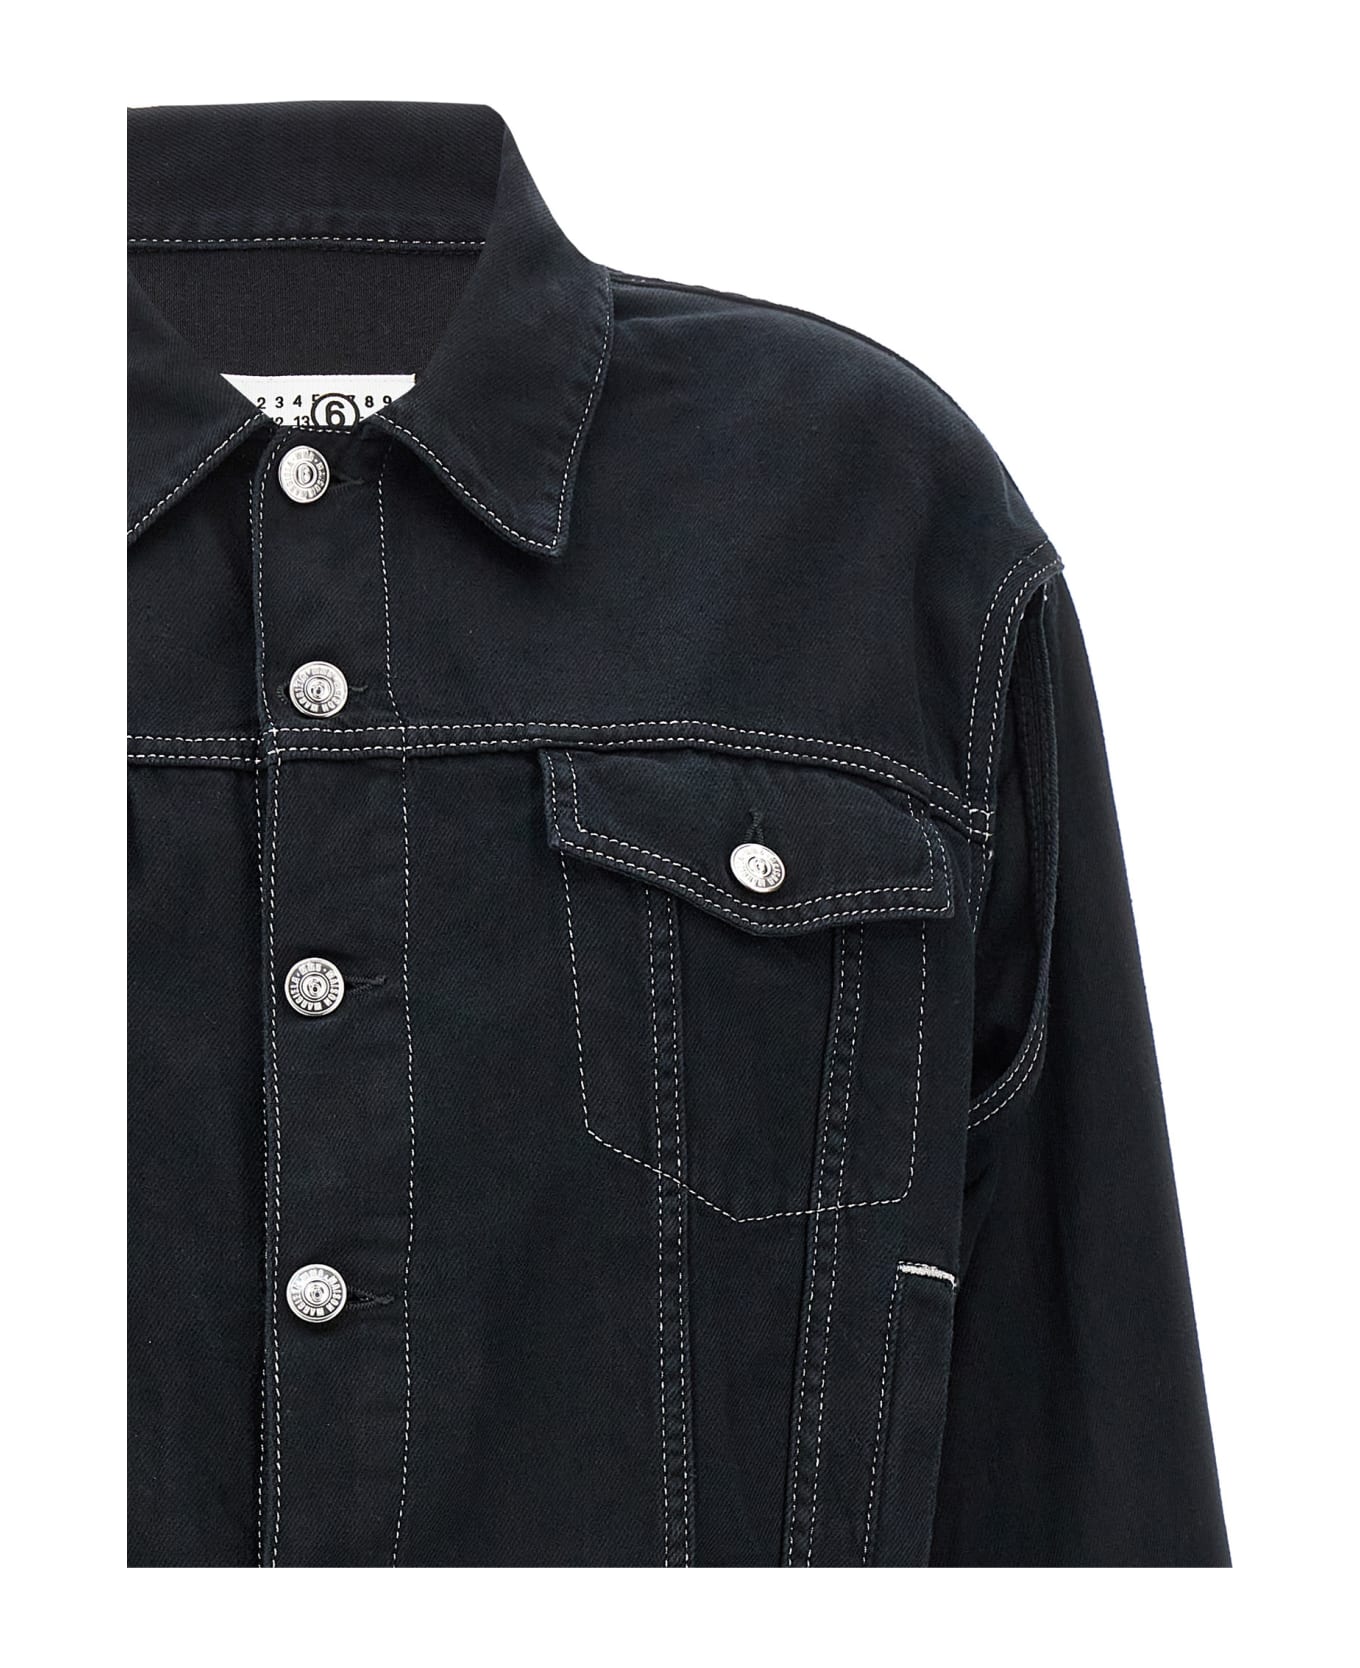 MM6 Maison Margiela Lurex Stitching Denim Jacket - Black  